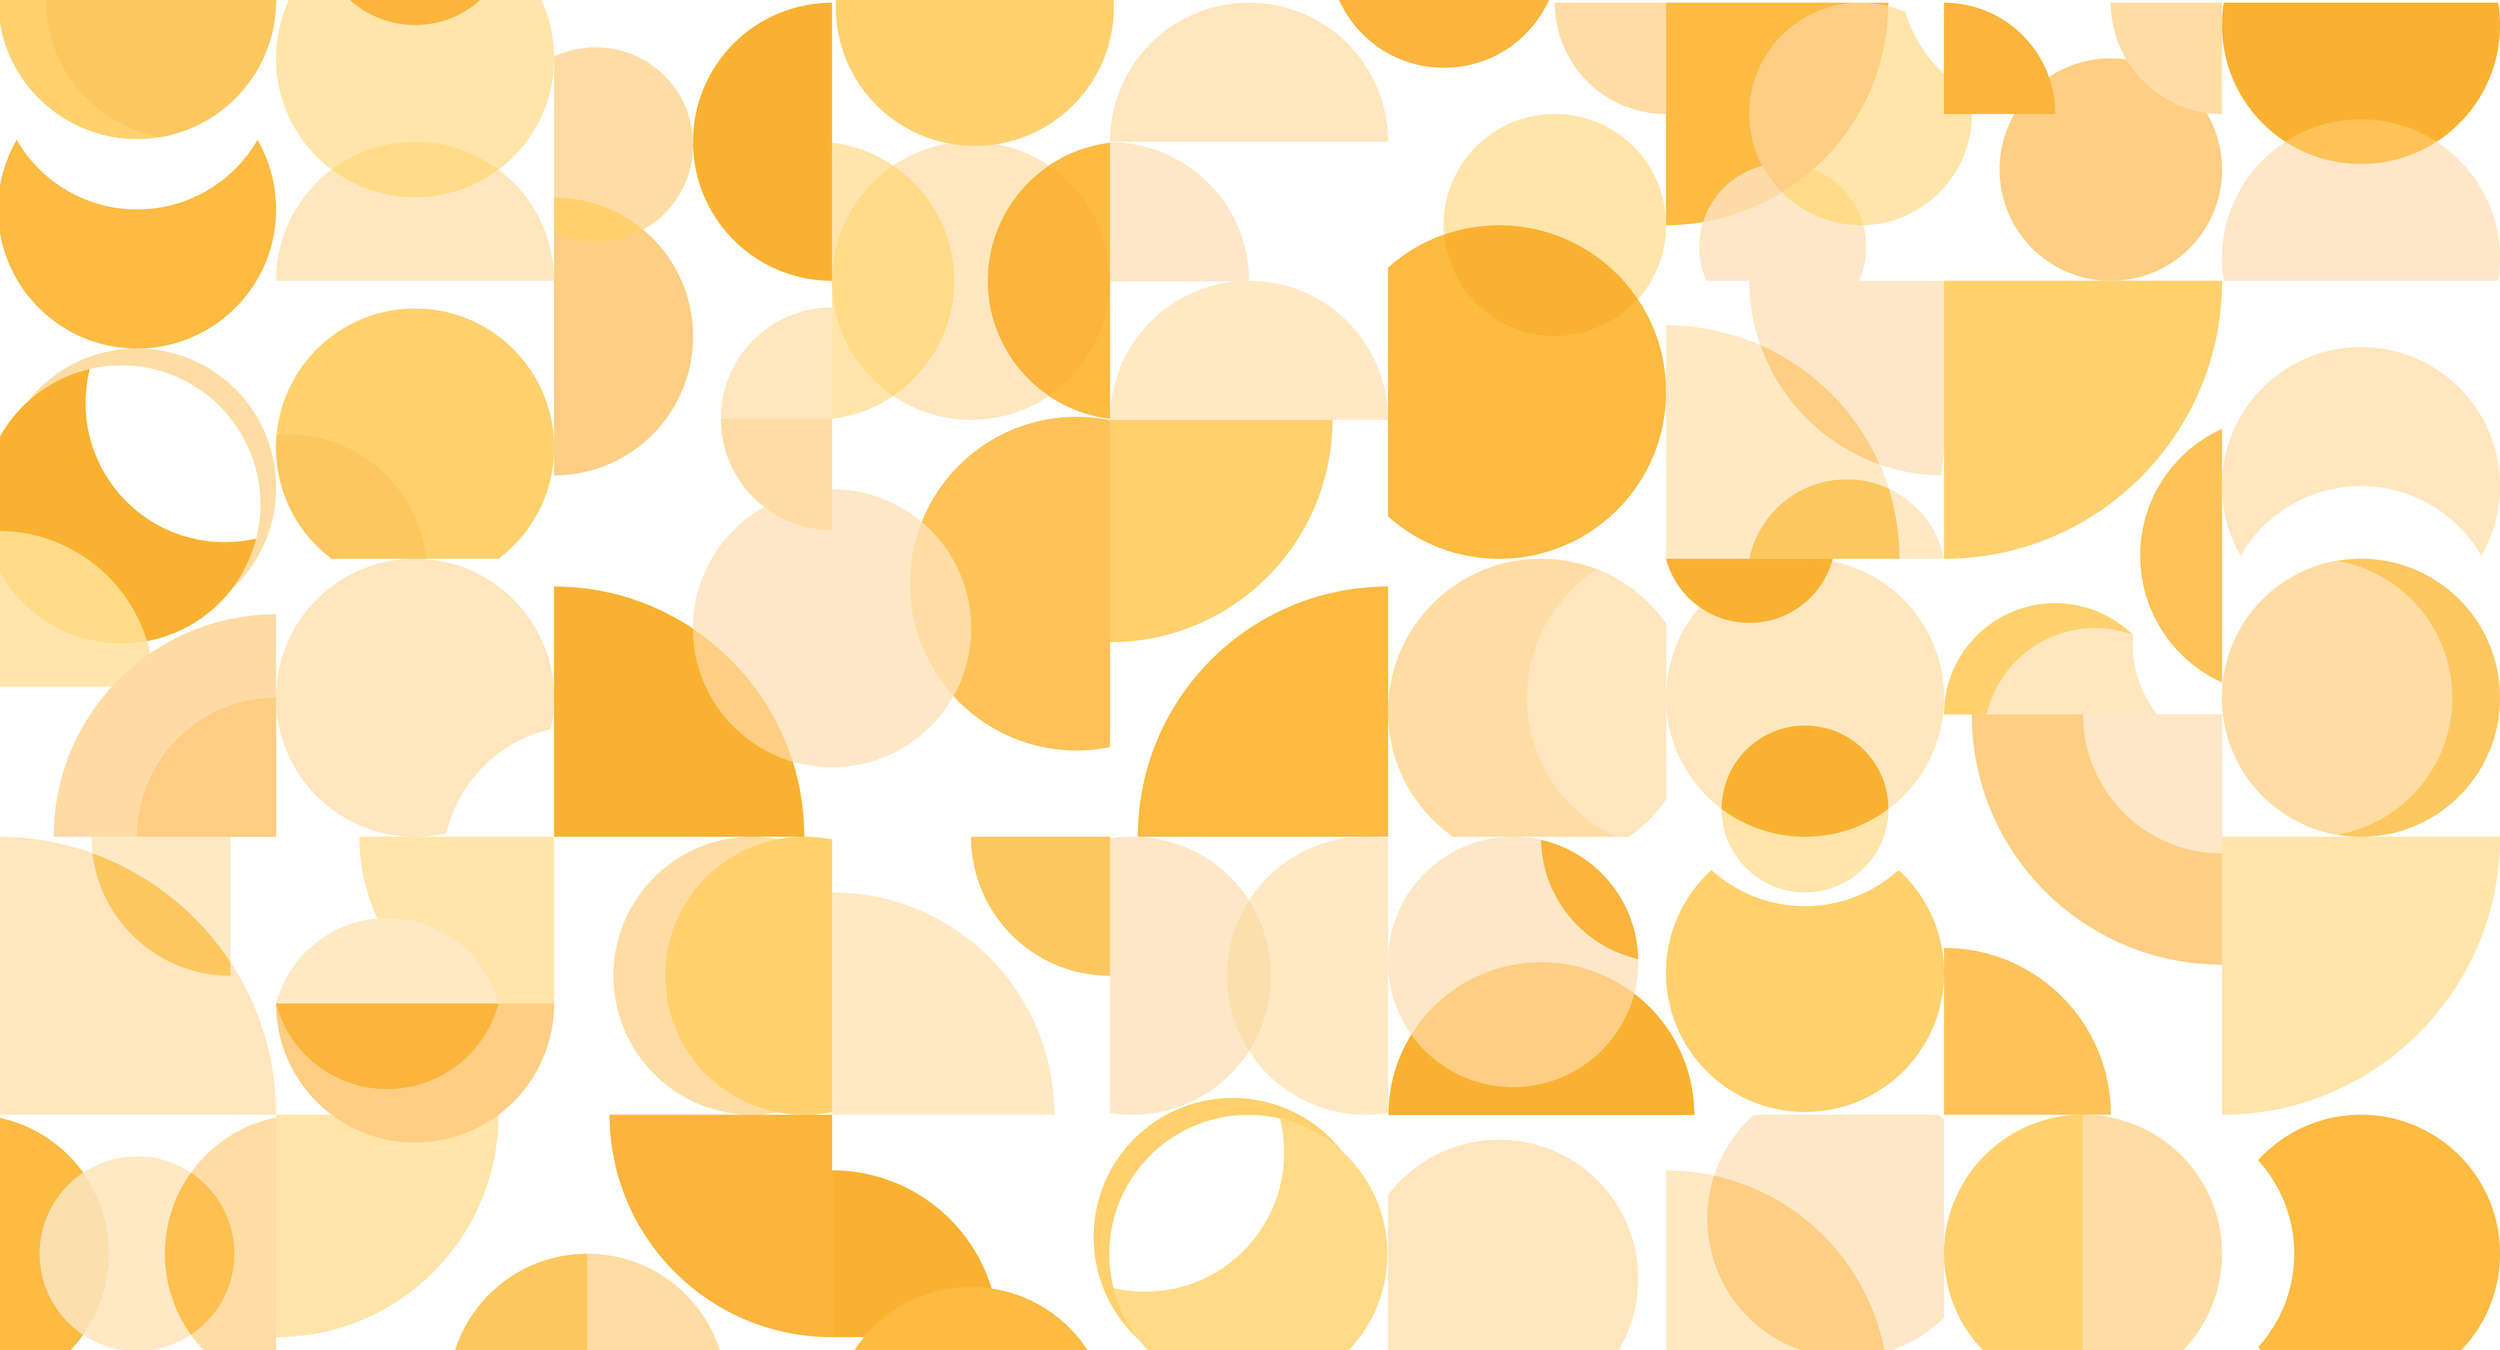             Fototapete Retro-Design, geometrisches Muster – Orange, Gelb, Weiß
        